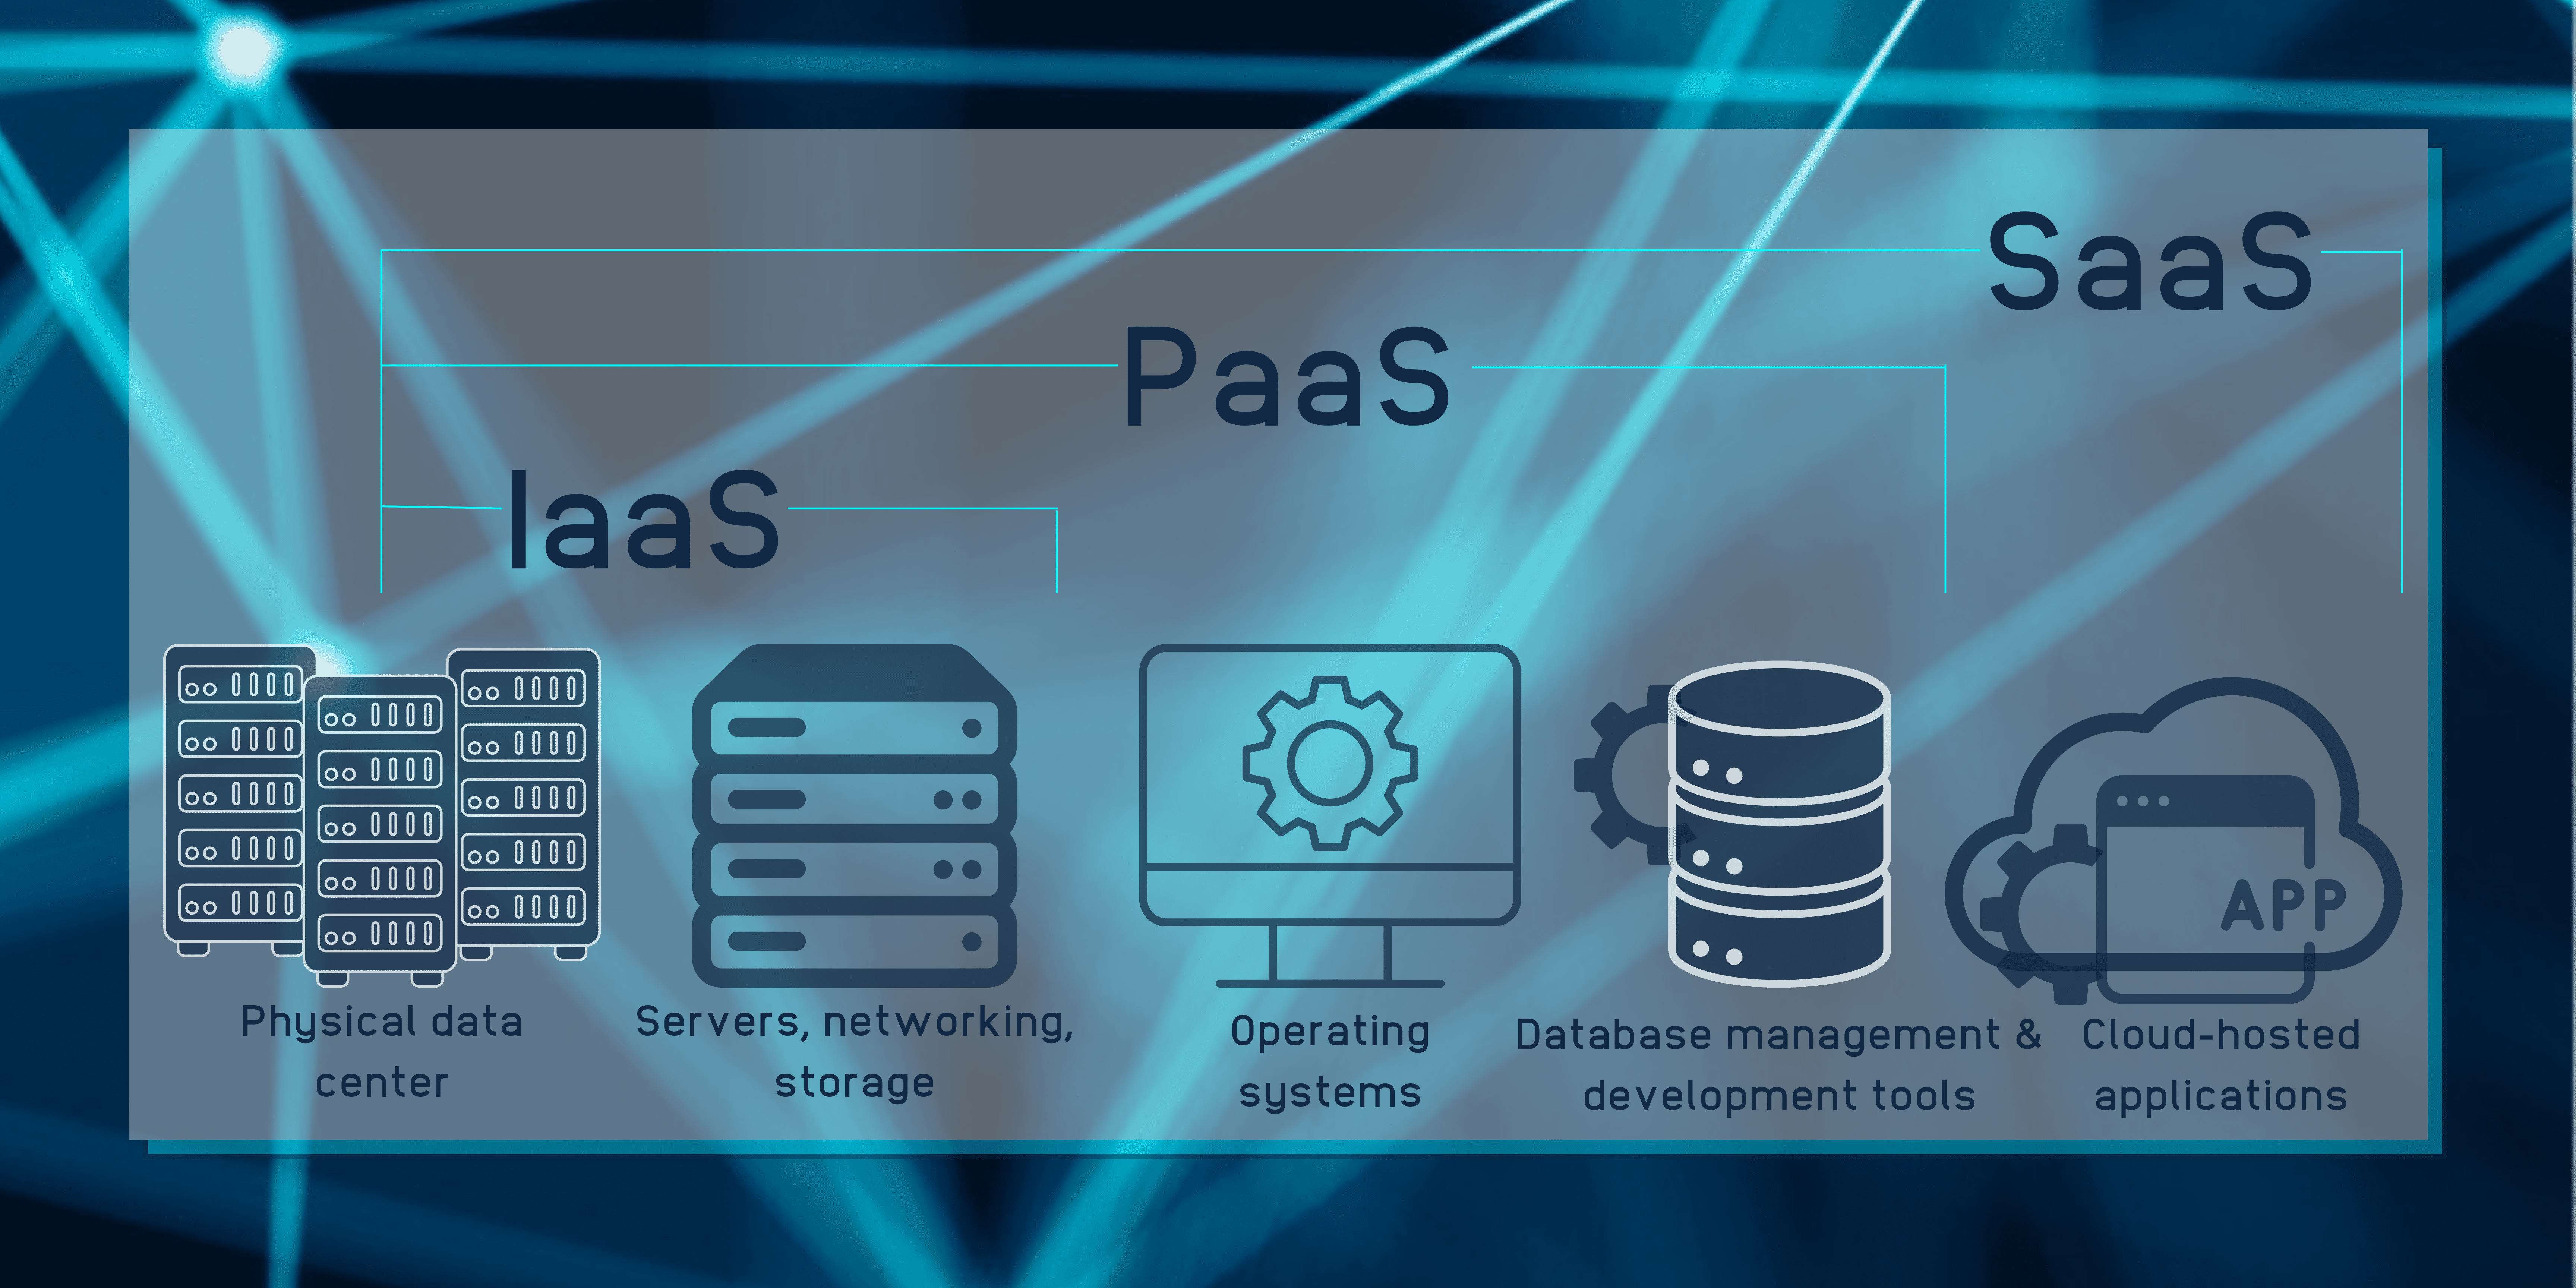 Die Konzepte des Cloud Computings: IaaS ist dargestellt mit einem Symbol für physische Datencenter sowie Server, networking und storage. Bei PaaS kommt zusätzlich zu den vorherigen noch ein Bildschirm mit einem Zahnrad dazu, der "Operating systems" darstellt, sowie ein Symbol für Database management und development tools Bei SaaS kommt dann noch ein Wolkensymbol, welches cloud-hosted applications darstellt.